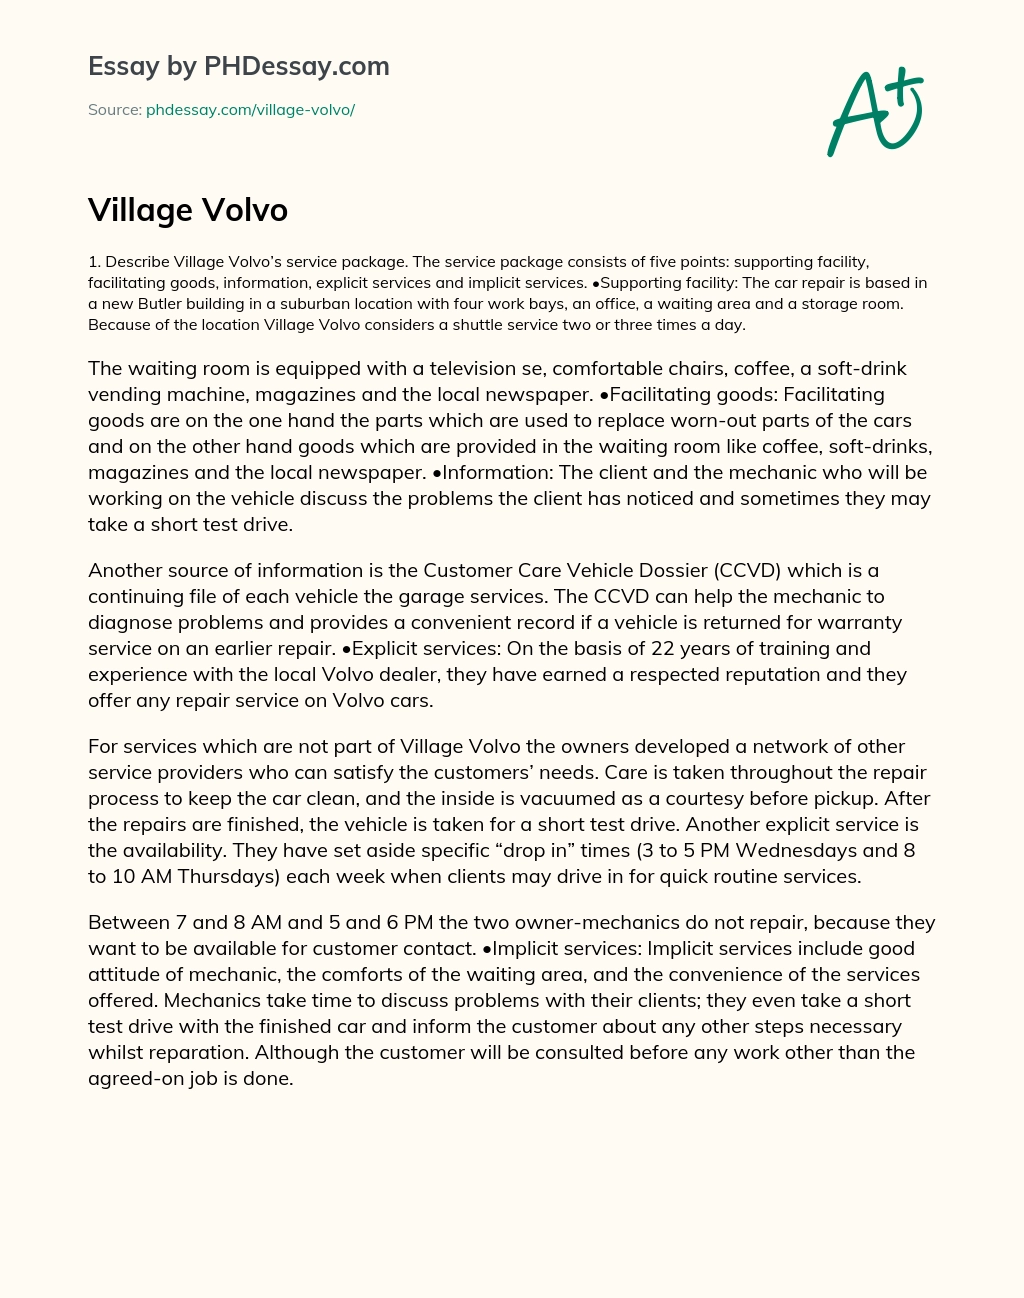 Village Volvo essay